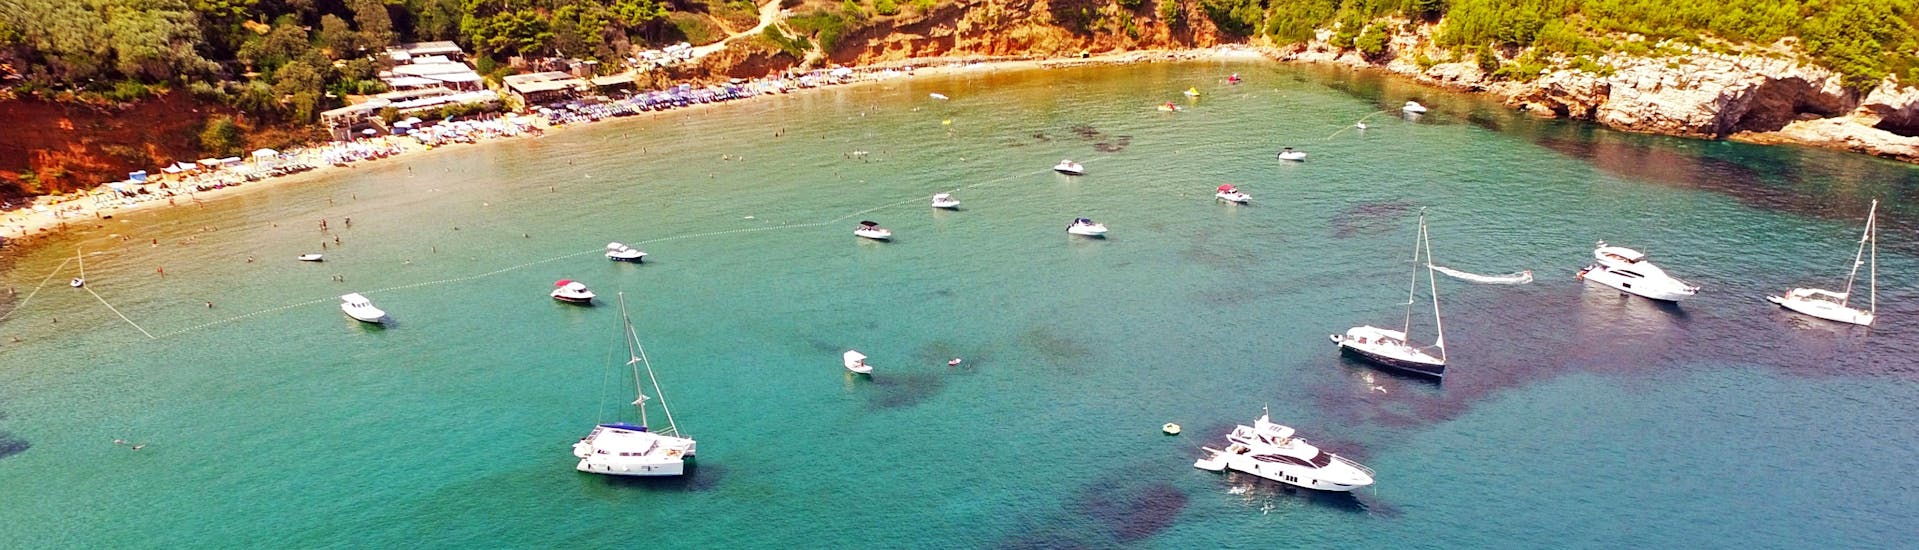 Blick auf die Bucht während der privaten ganztägigen Bootstour von Dubrovnik zu den Elaphiti-Inseln, die von Snooky Tours Dubrovnik veranstaltet wird.